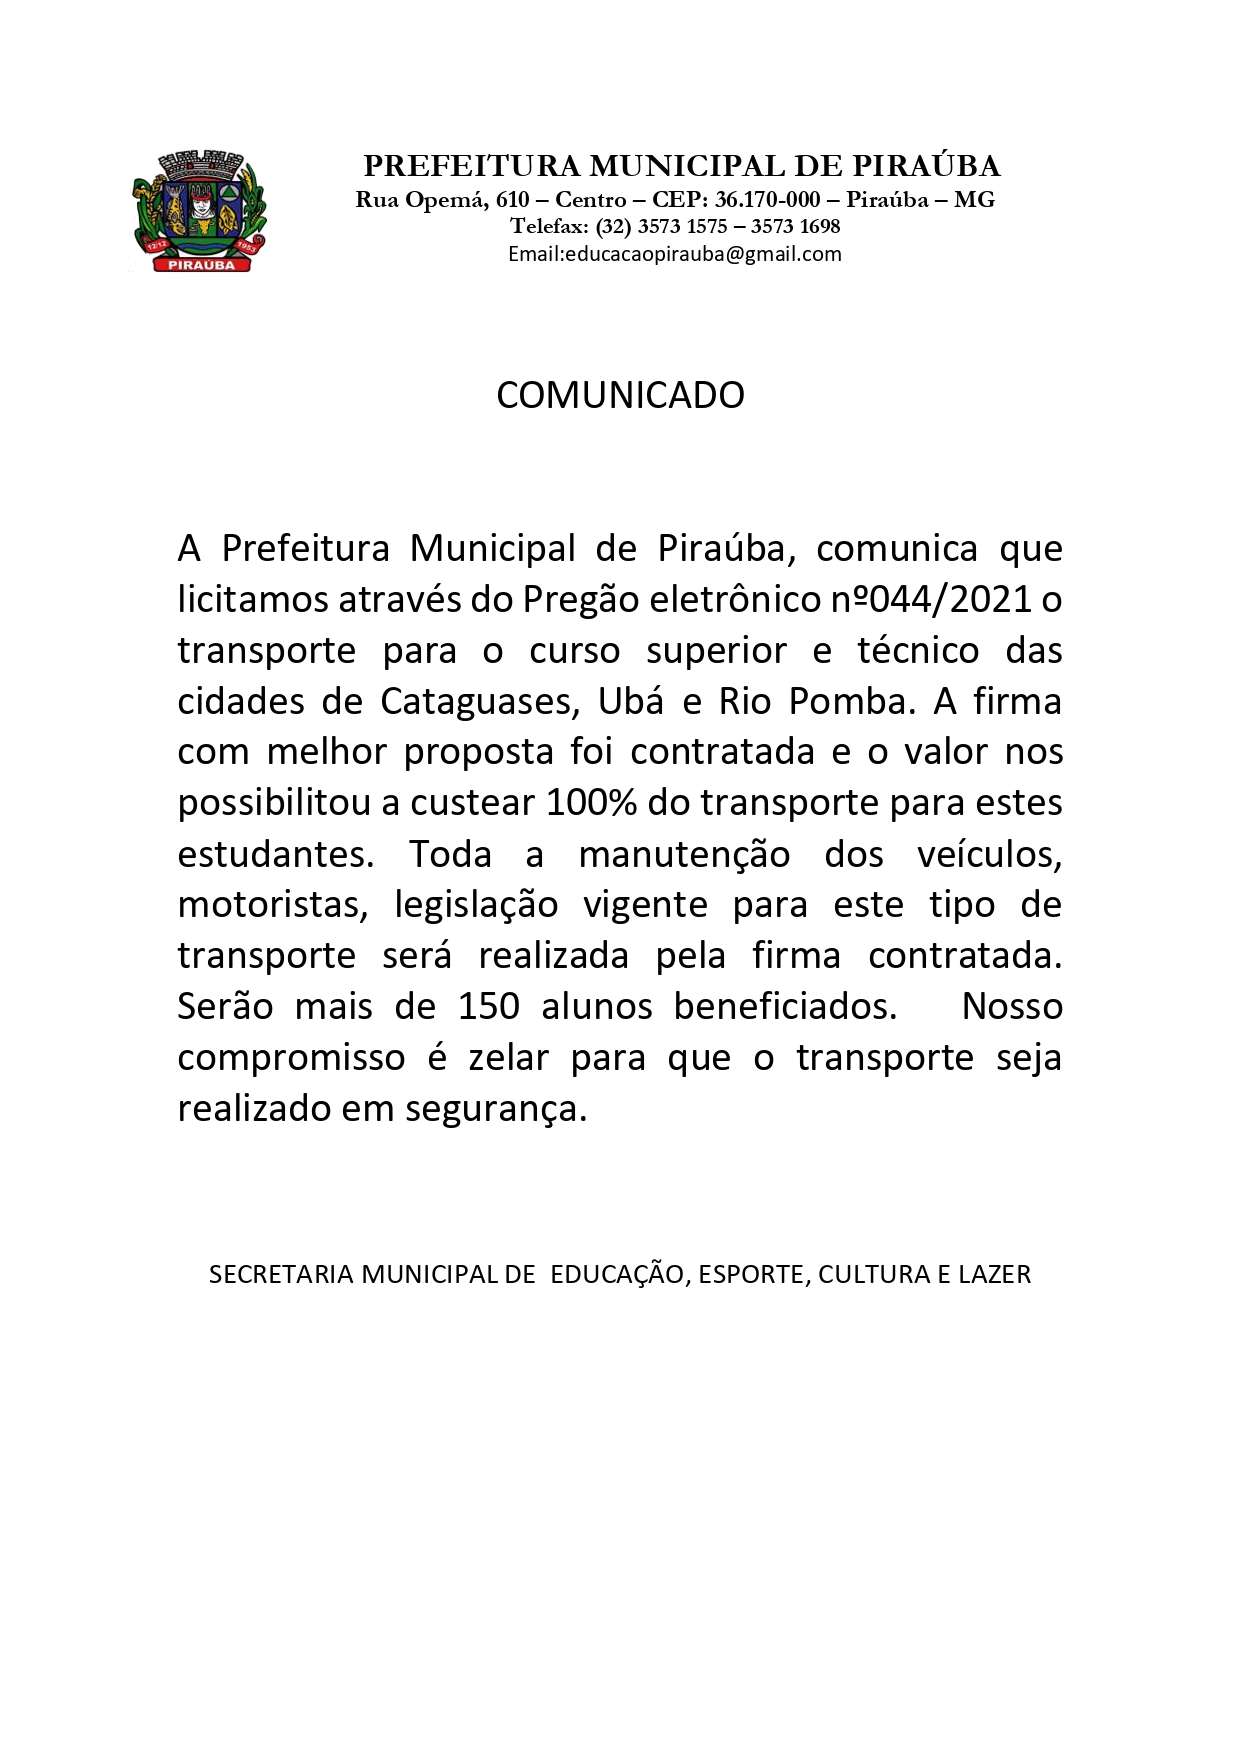 Transporte para o curso superior e técnico das cidades de Cataguases, Ubá e Rio Pomba